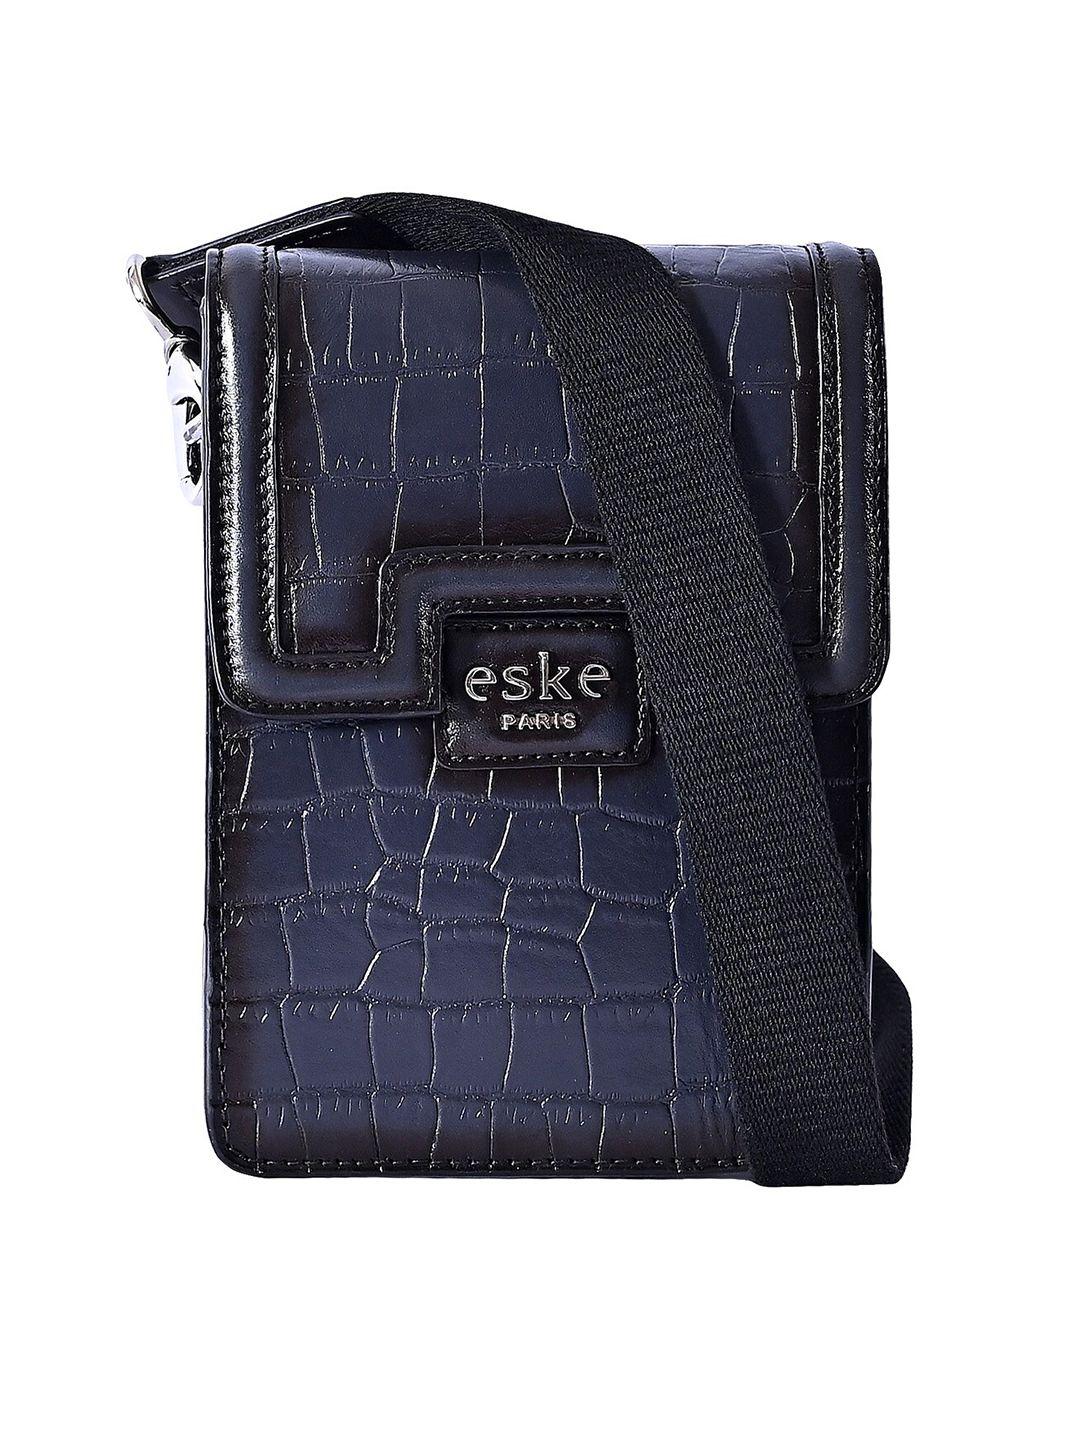 eske unisex textured messenger bag